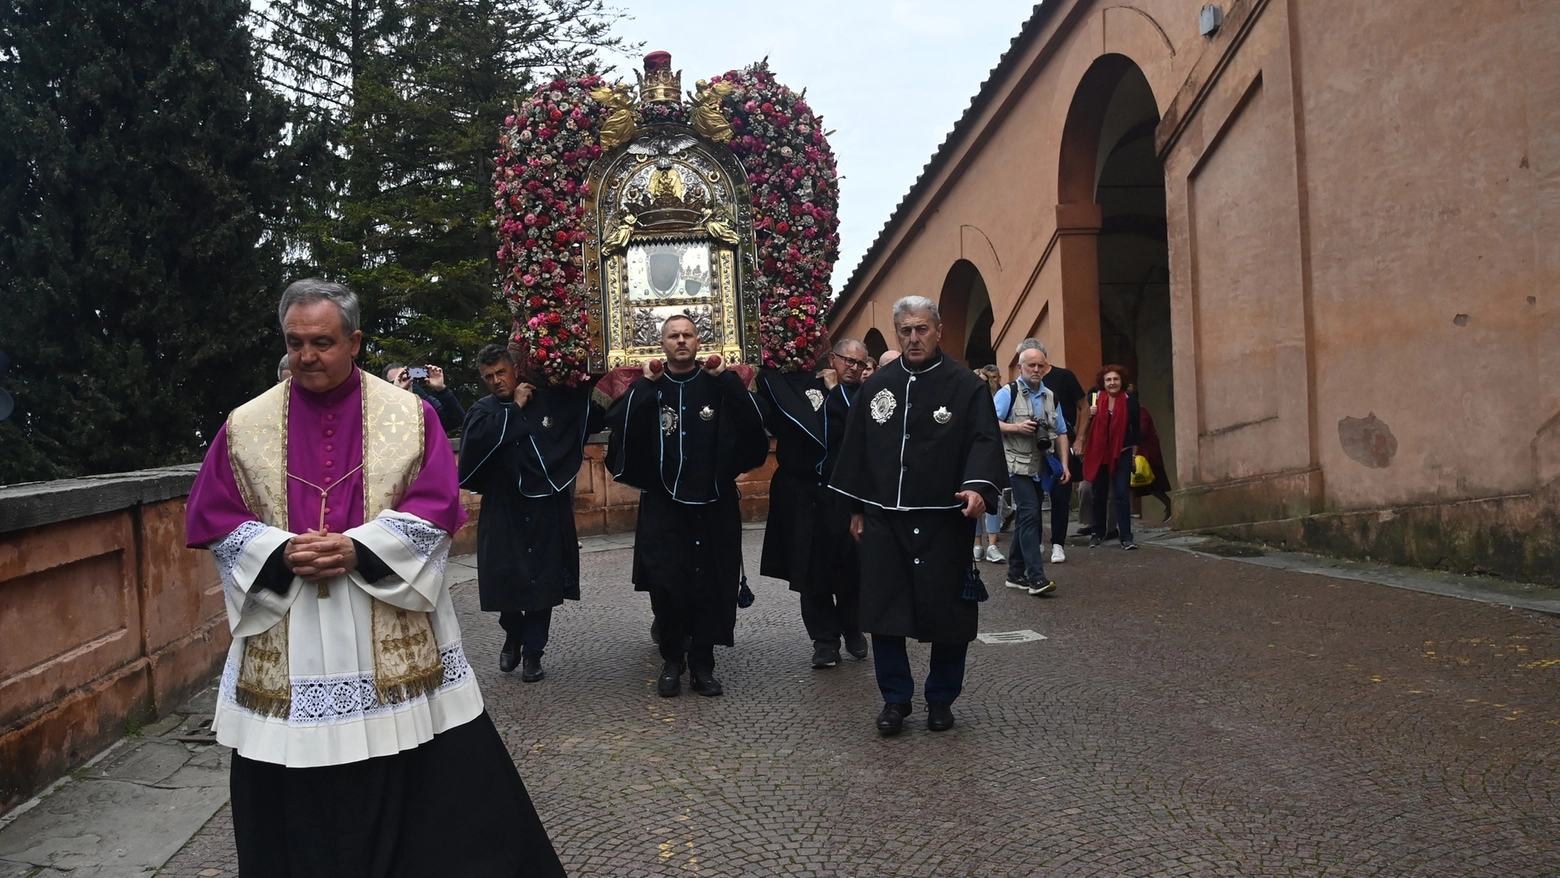 La venerata icona resterà nella cattedrale per una settimana, risalita prevista il 12 maggio. Nel weekend la processione, tra sette giorni la cerimonia con Zuppi in piazza Maggiore